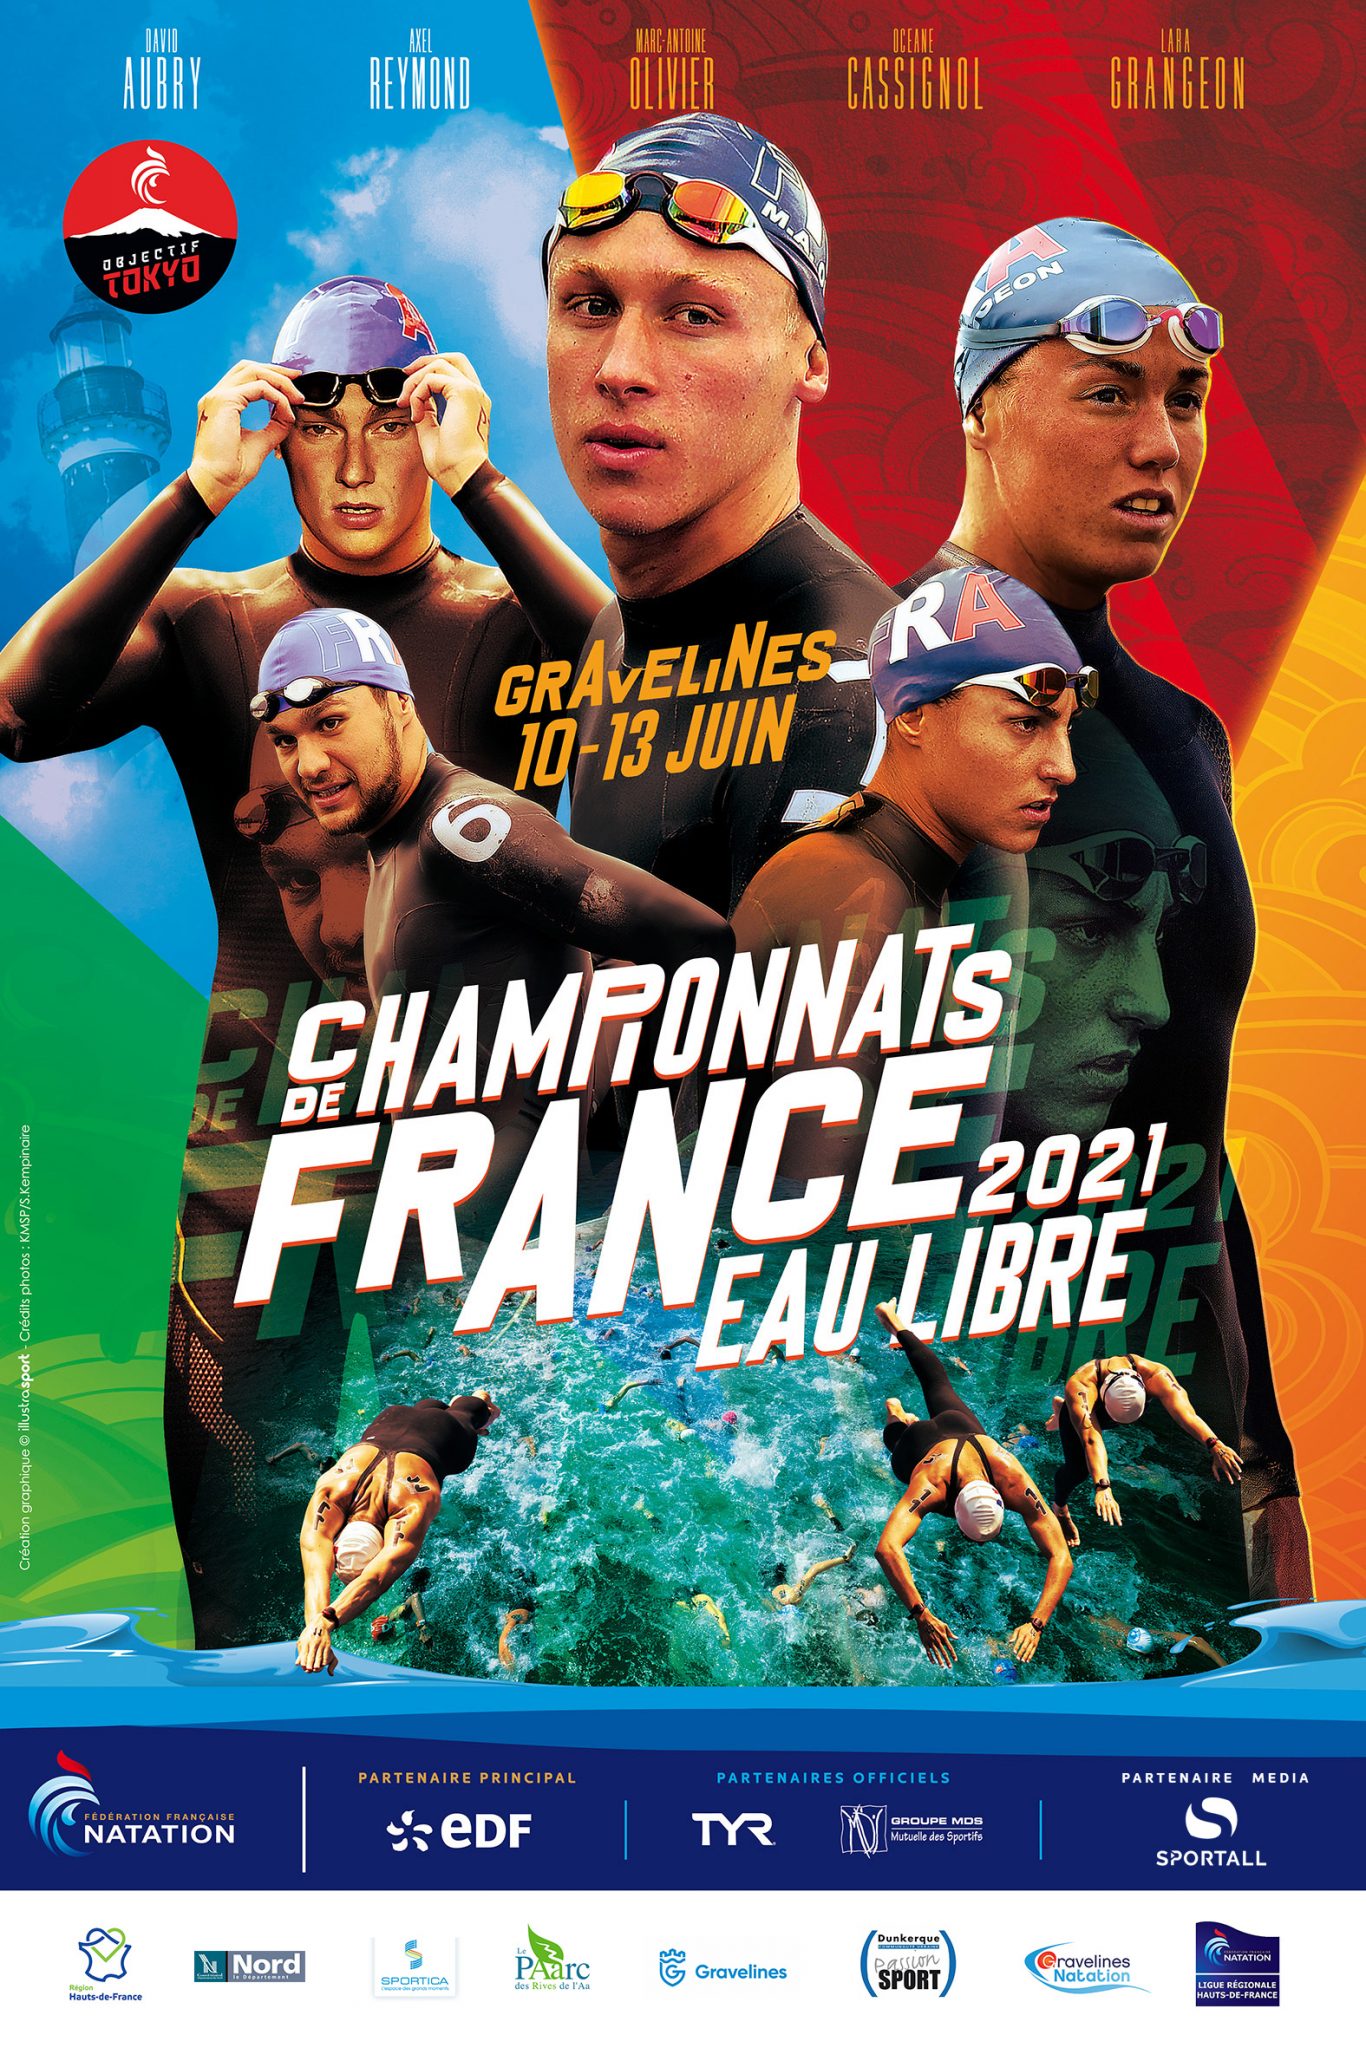 Championnats de France eau libre 2021 | Gravelines Natation